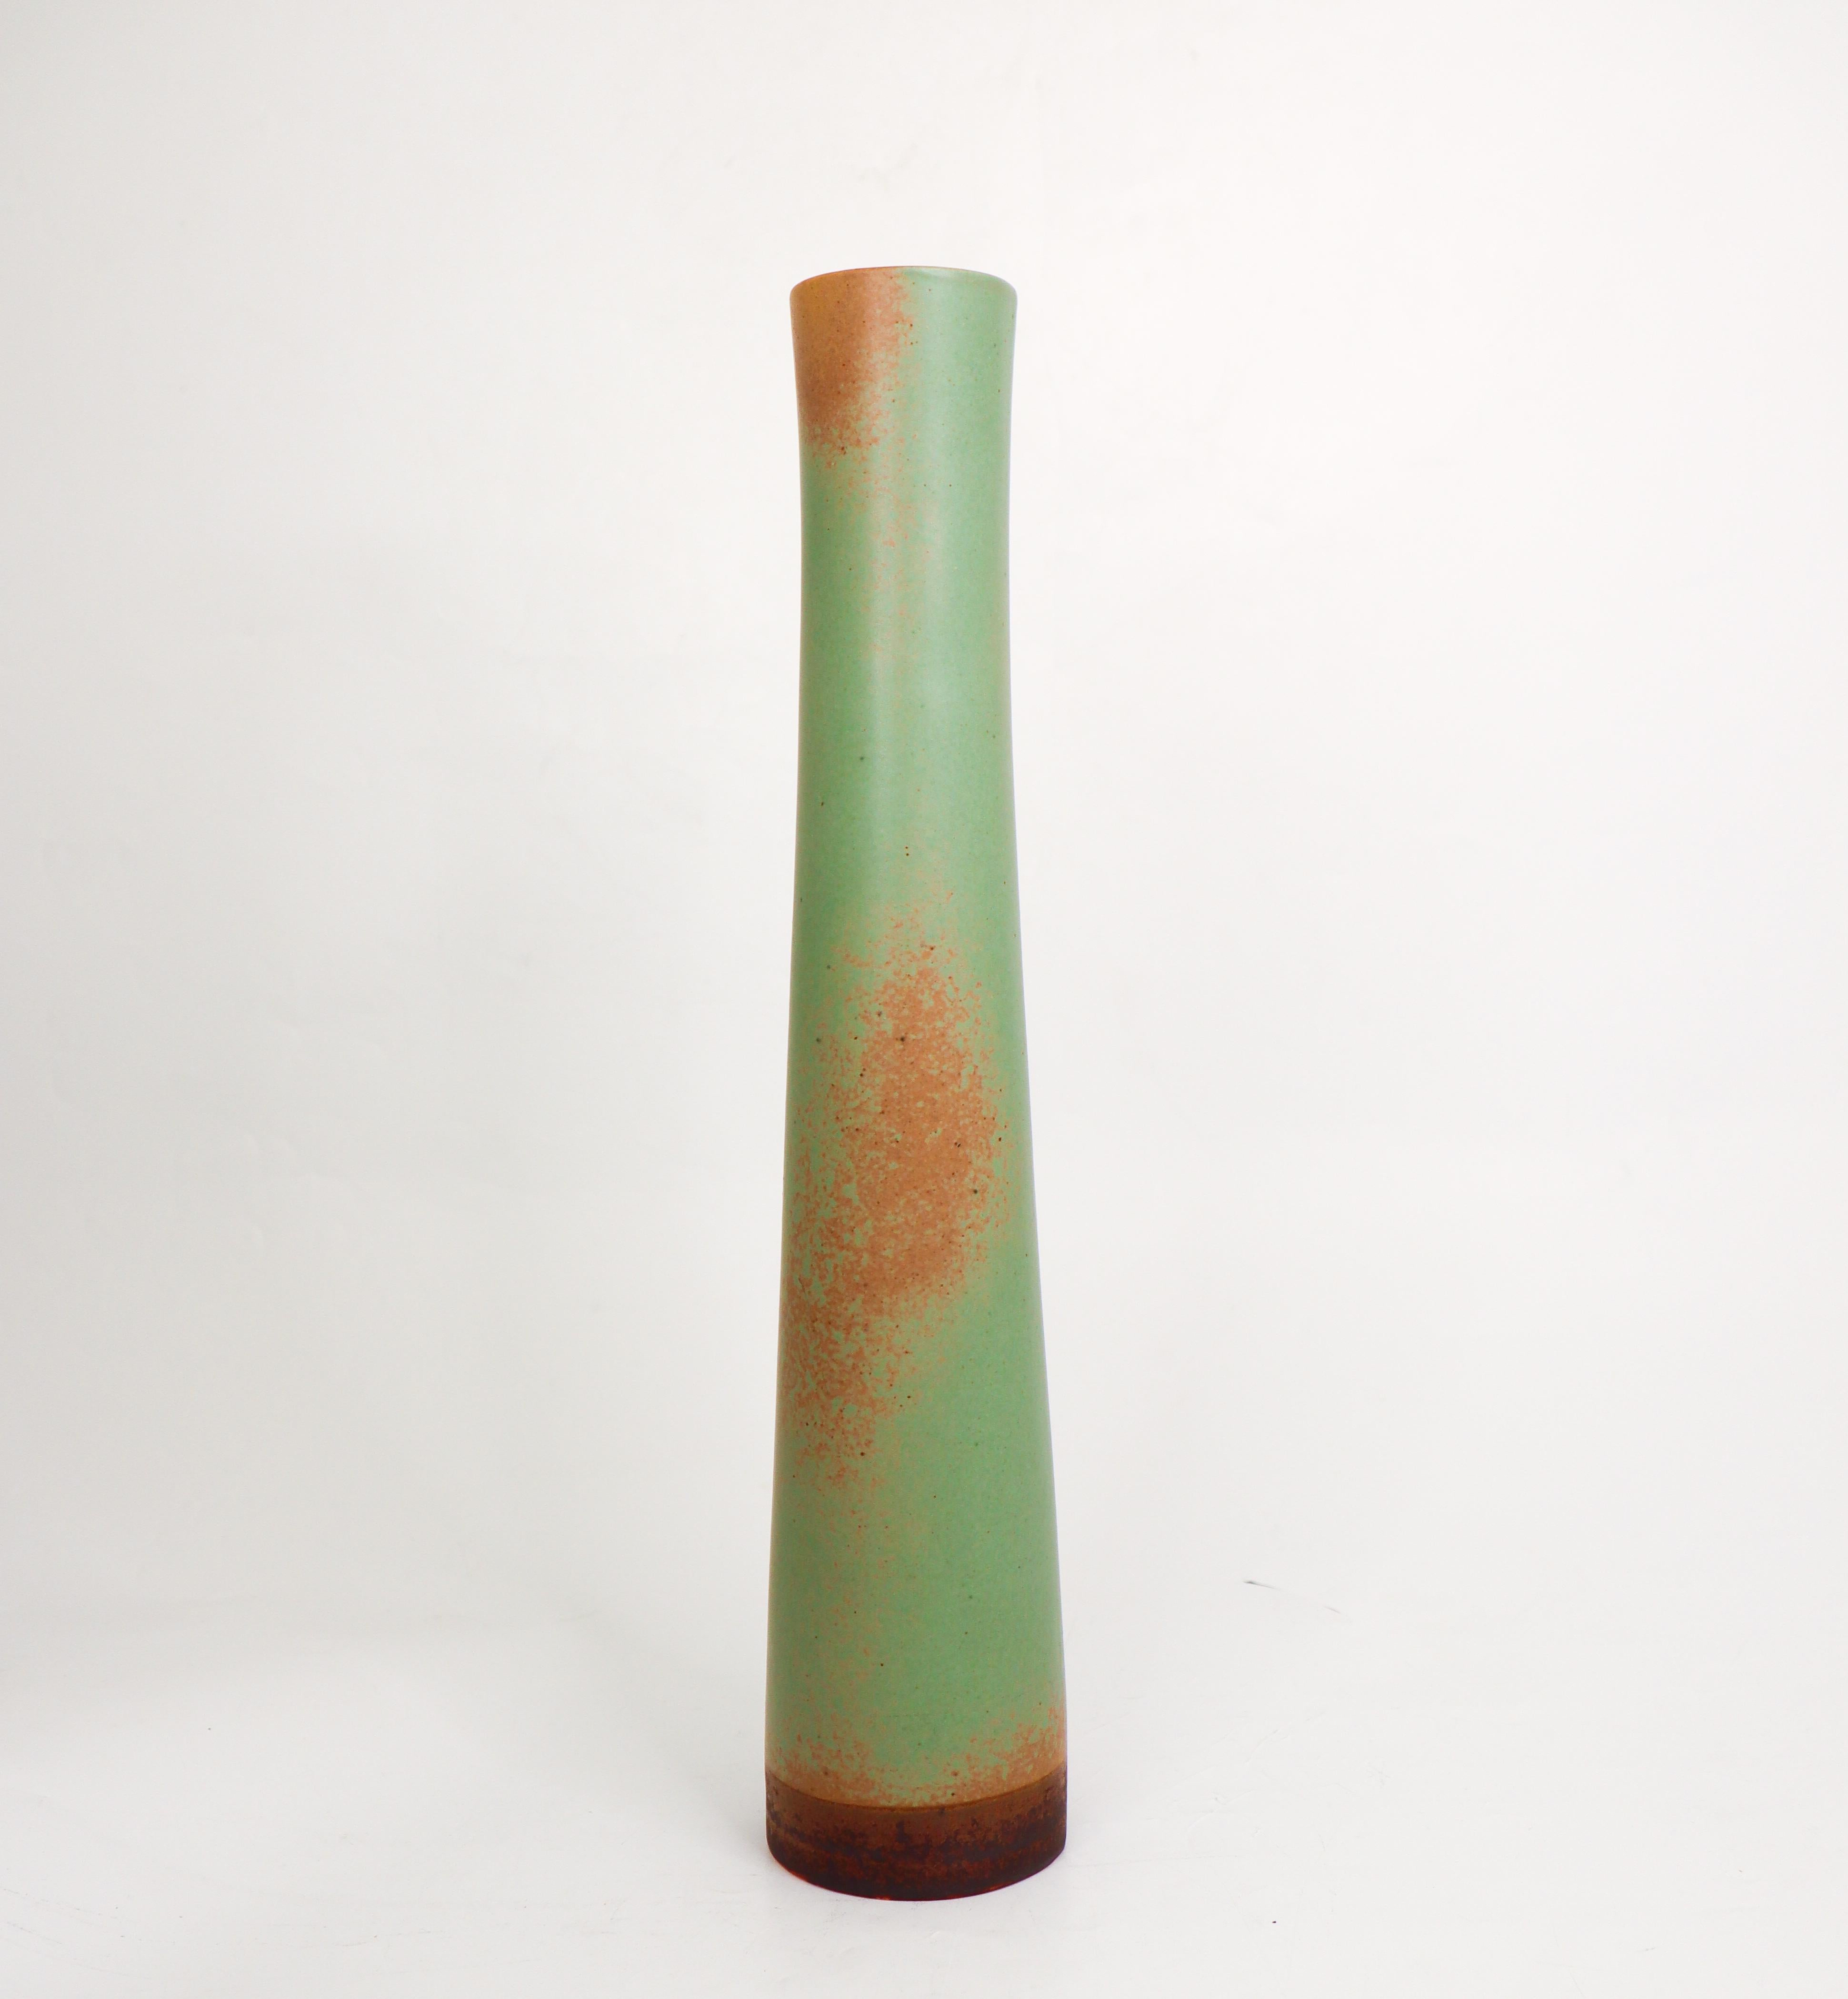 Eine atemberaubende zylindrische Vase, entworfen von Annikki Hovisaari bei Arabia in Finnland in der Mitte des 20. Jahrhunderts. Die Vase hat eine wunderschöne mattgrüne Glasur, ist 36 cm (14,4